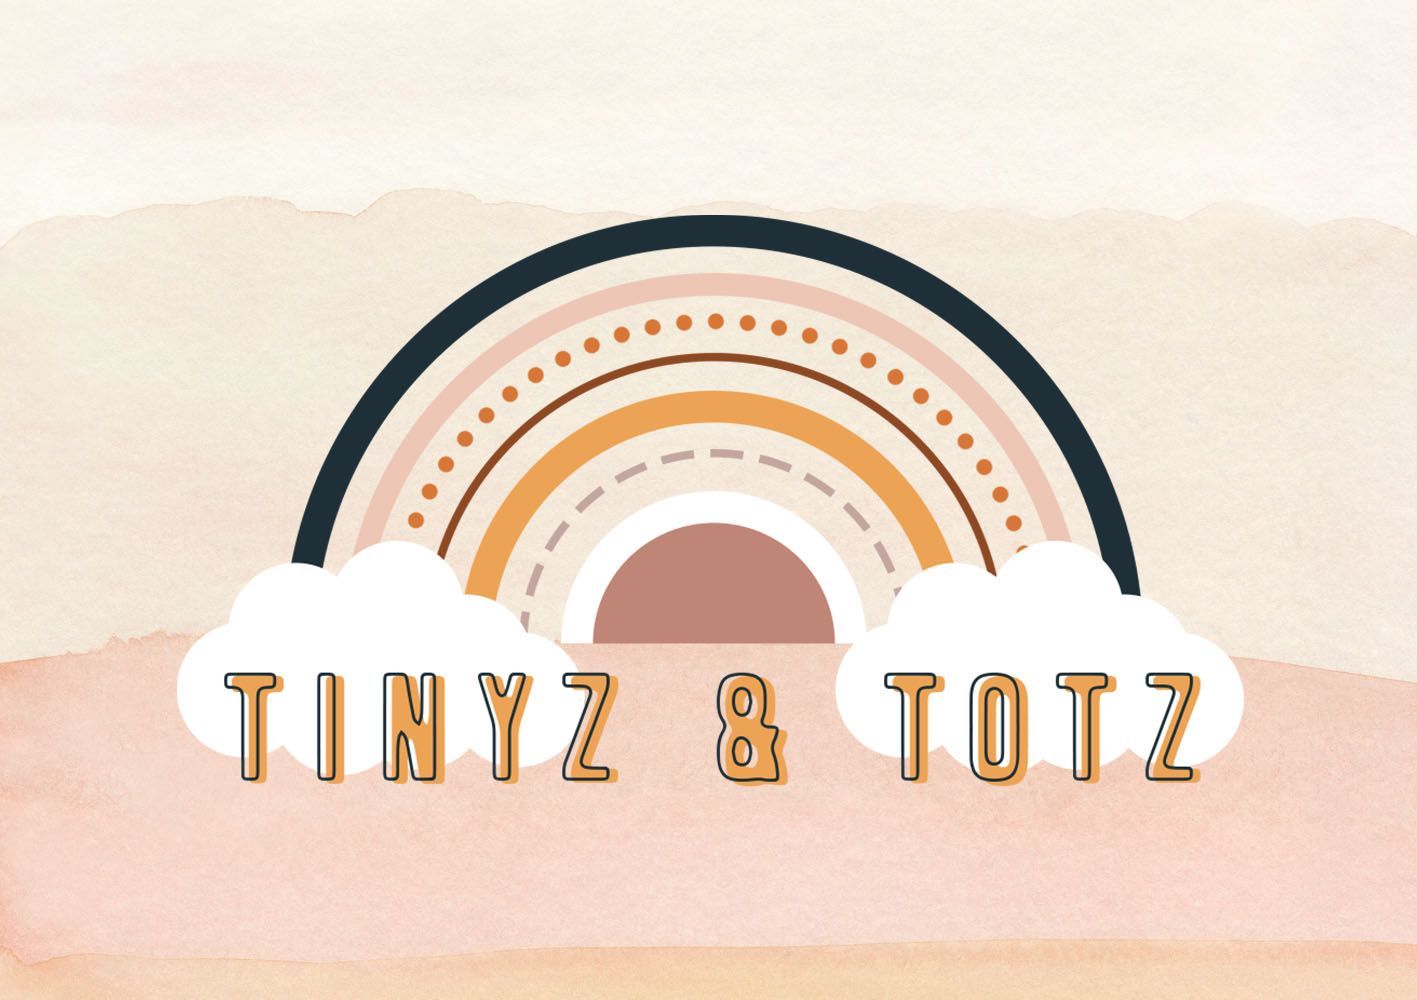 TINYZ & TOTZ